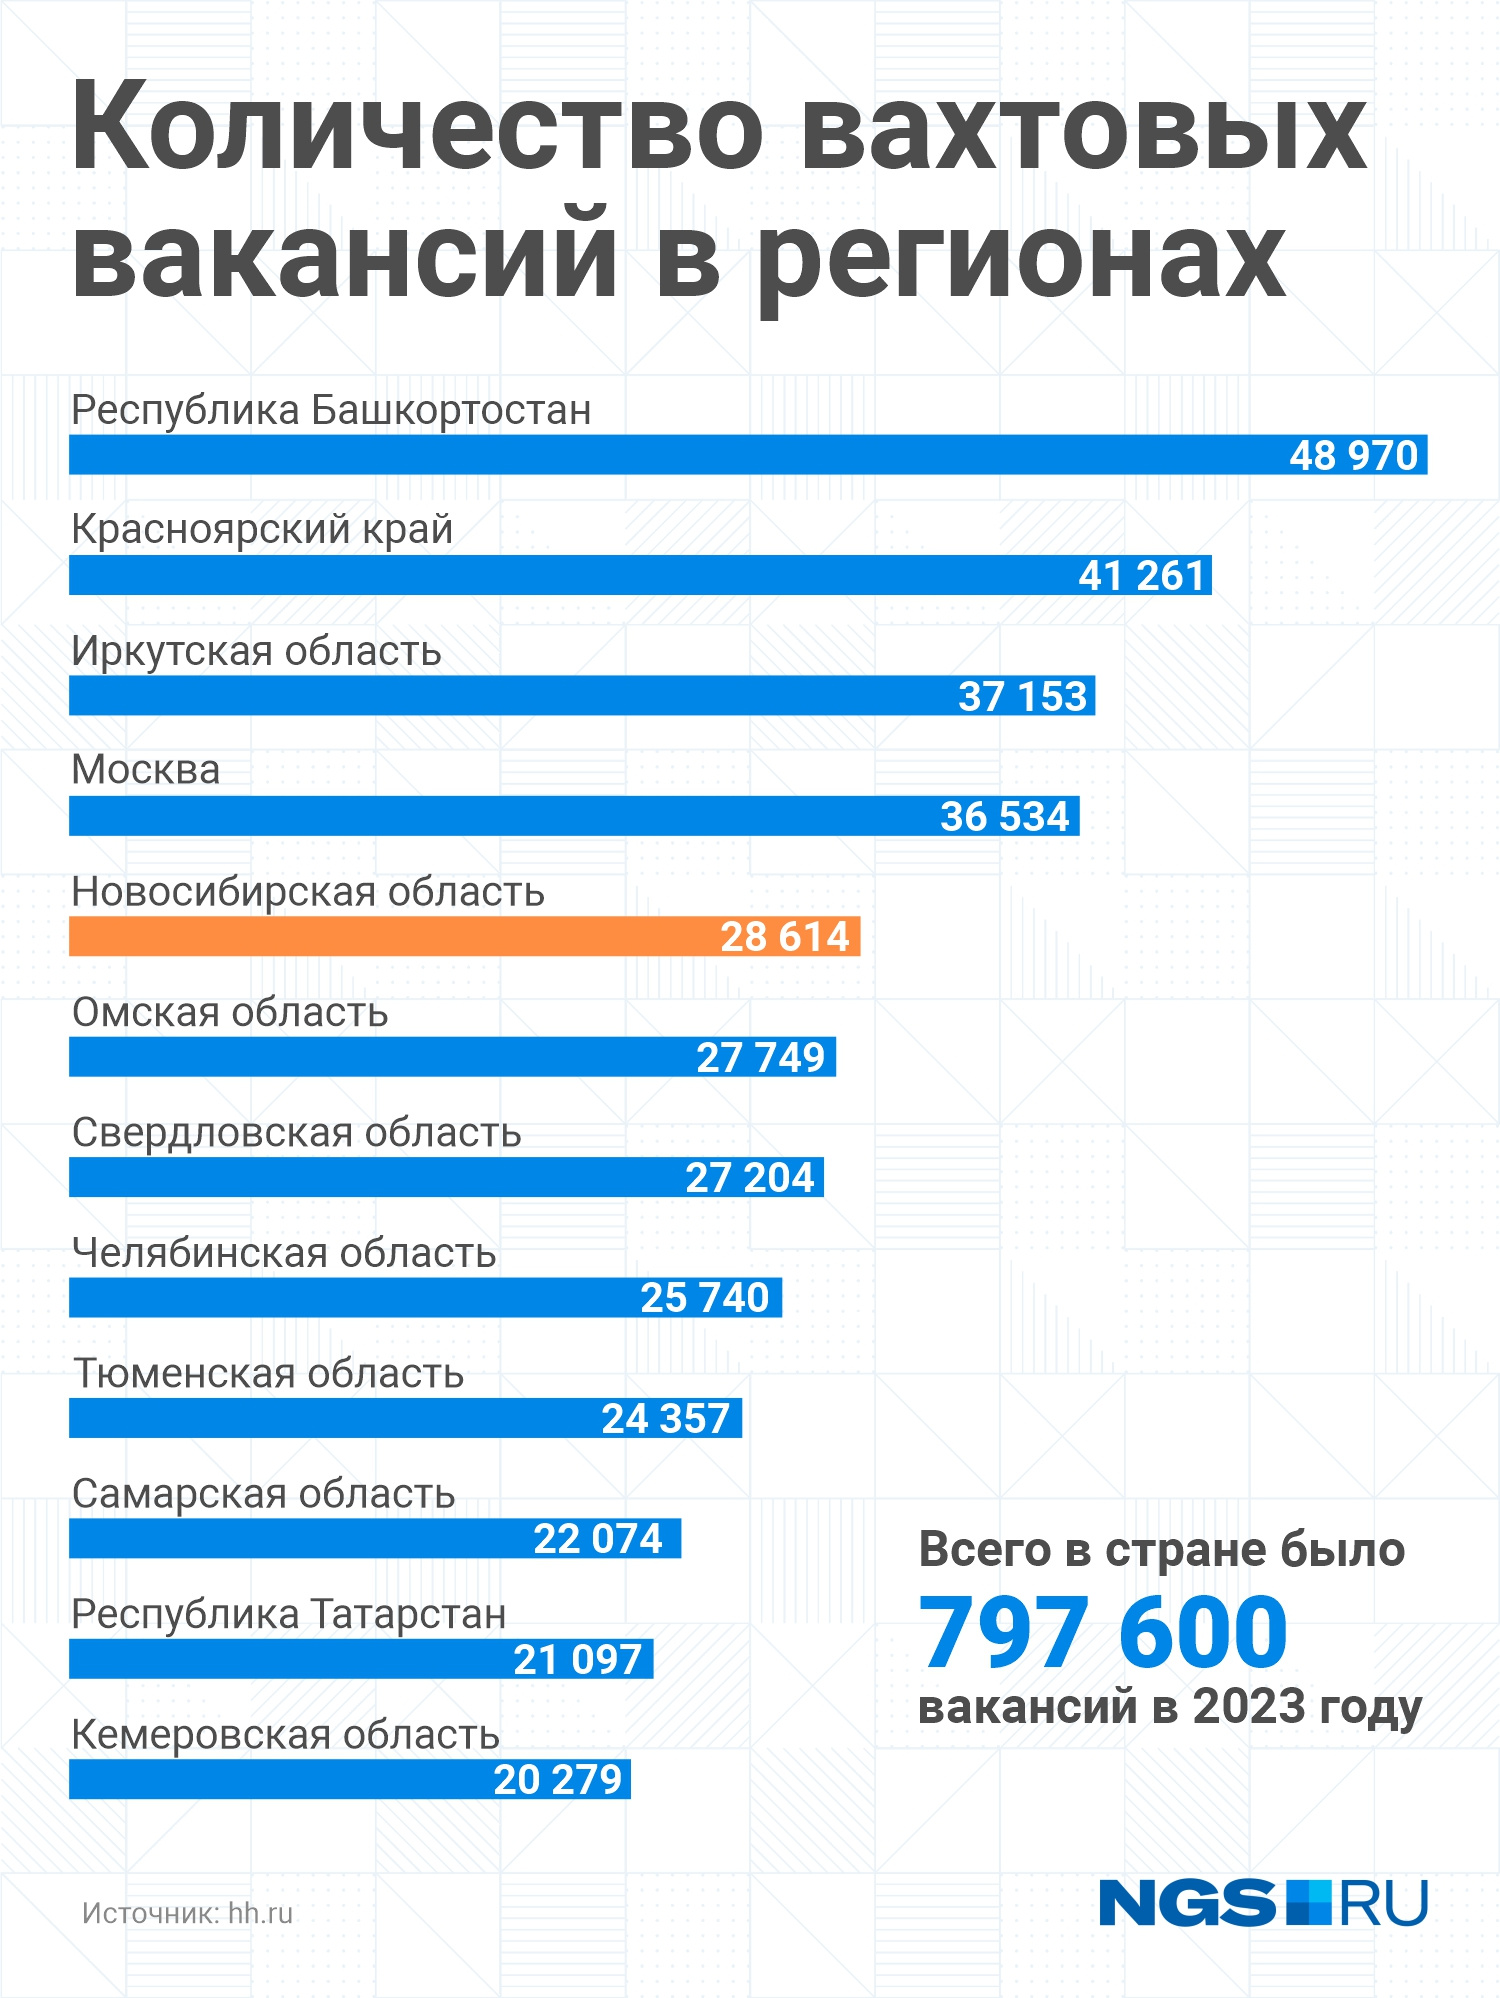 В Новосибирской области в 2023 году больше 28 тысяч вакансий для работы вахтовым методом